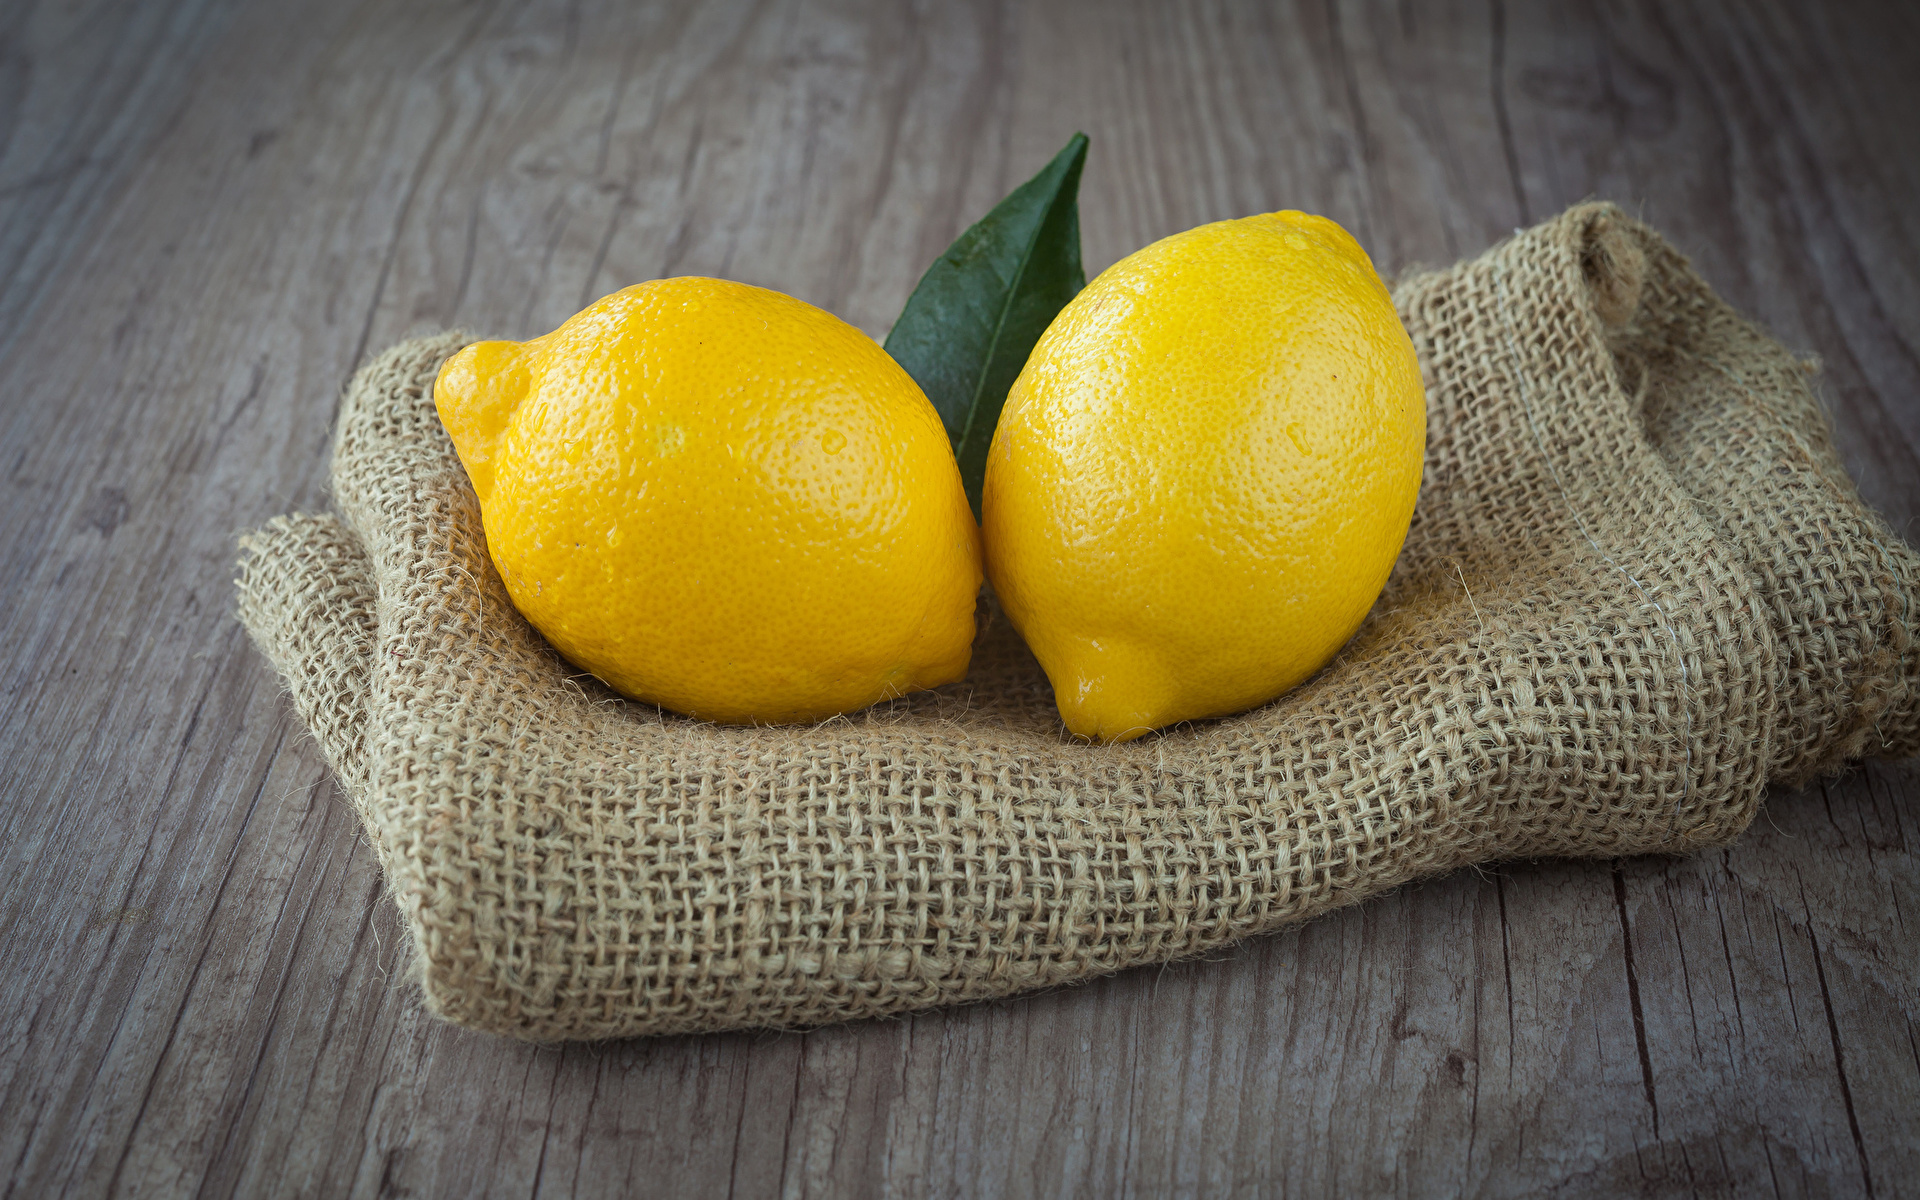 Фото 2 Лимоны Продукты питания Цитрусовые 1920x1200 два две Двое вдвоем Еда Пища